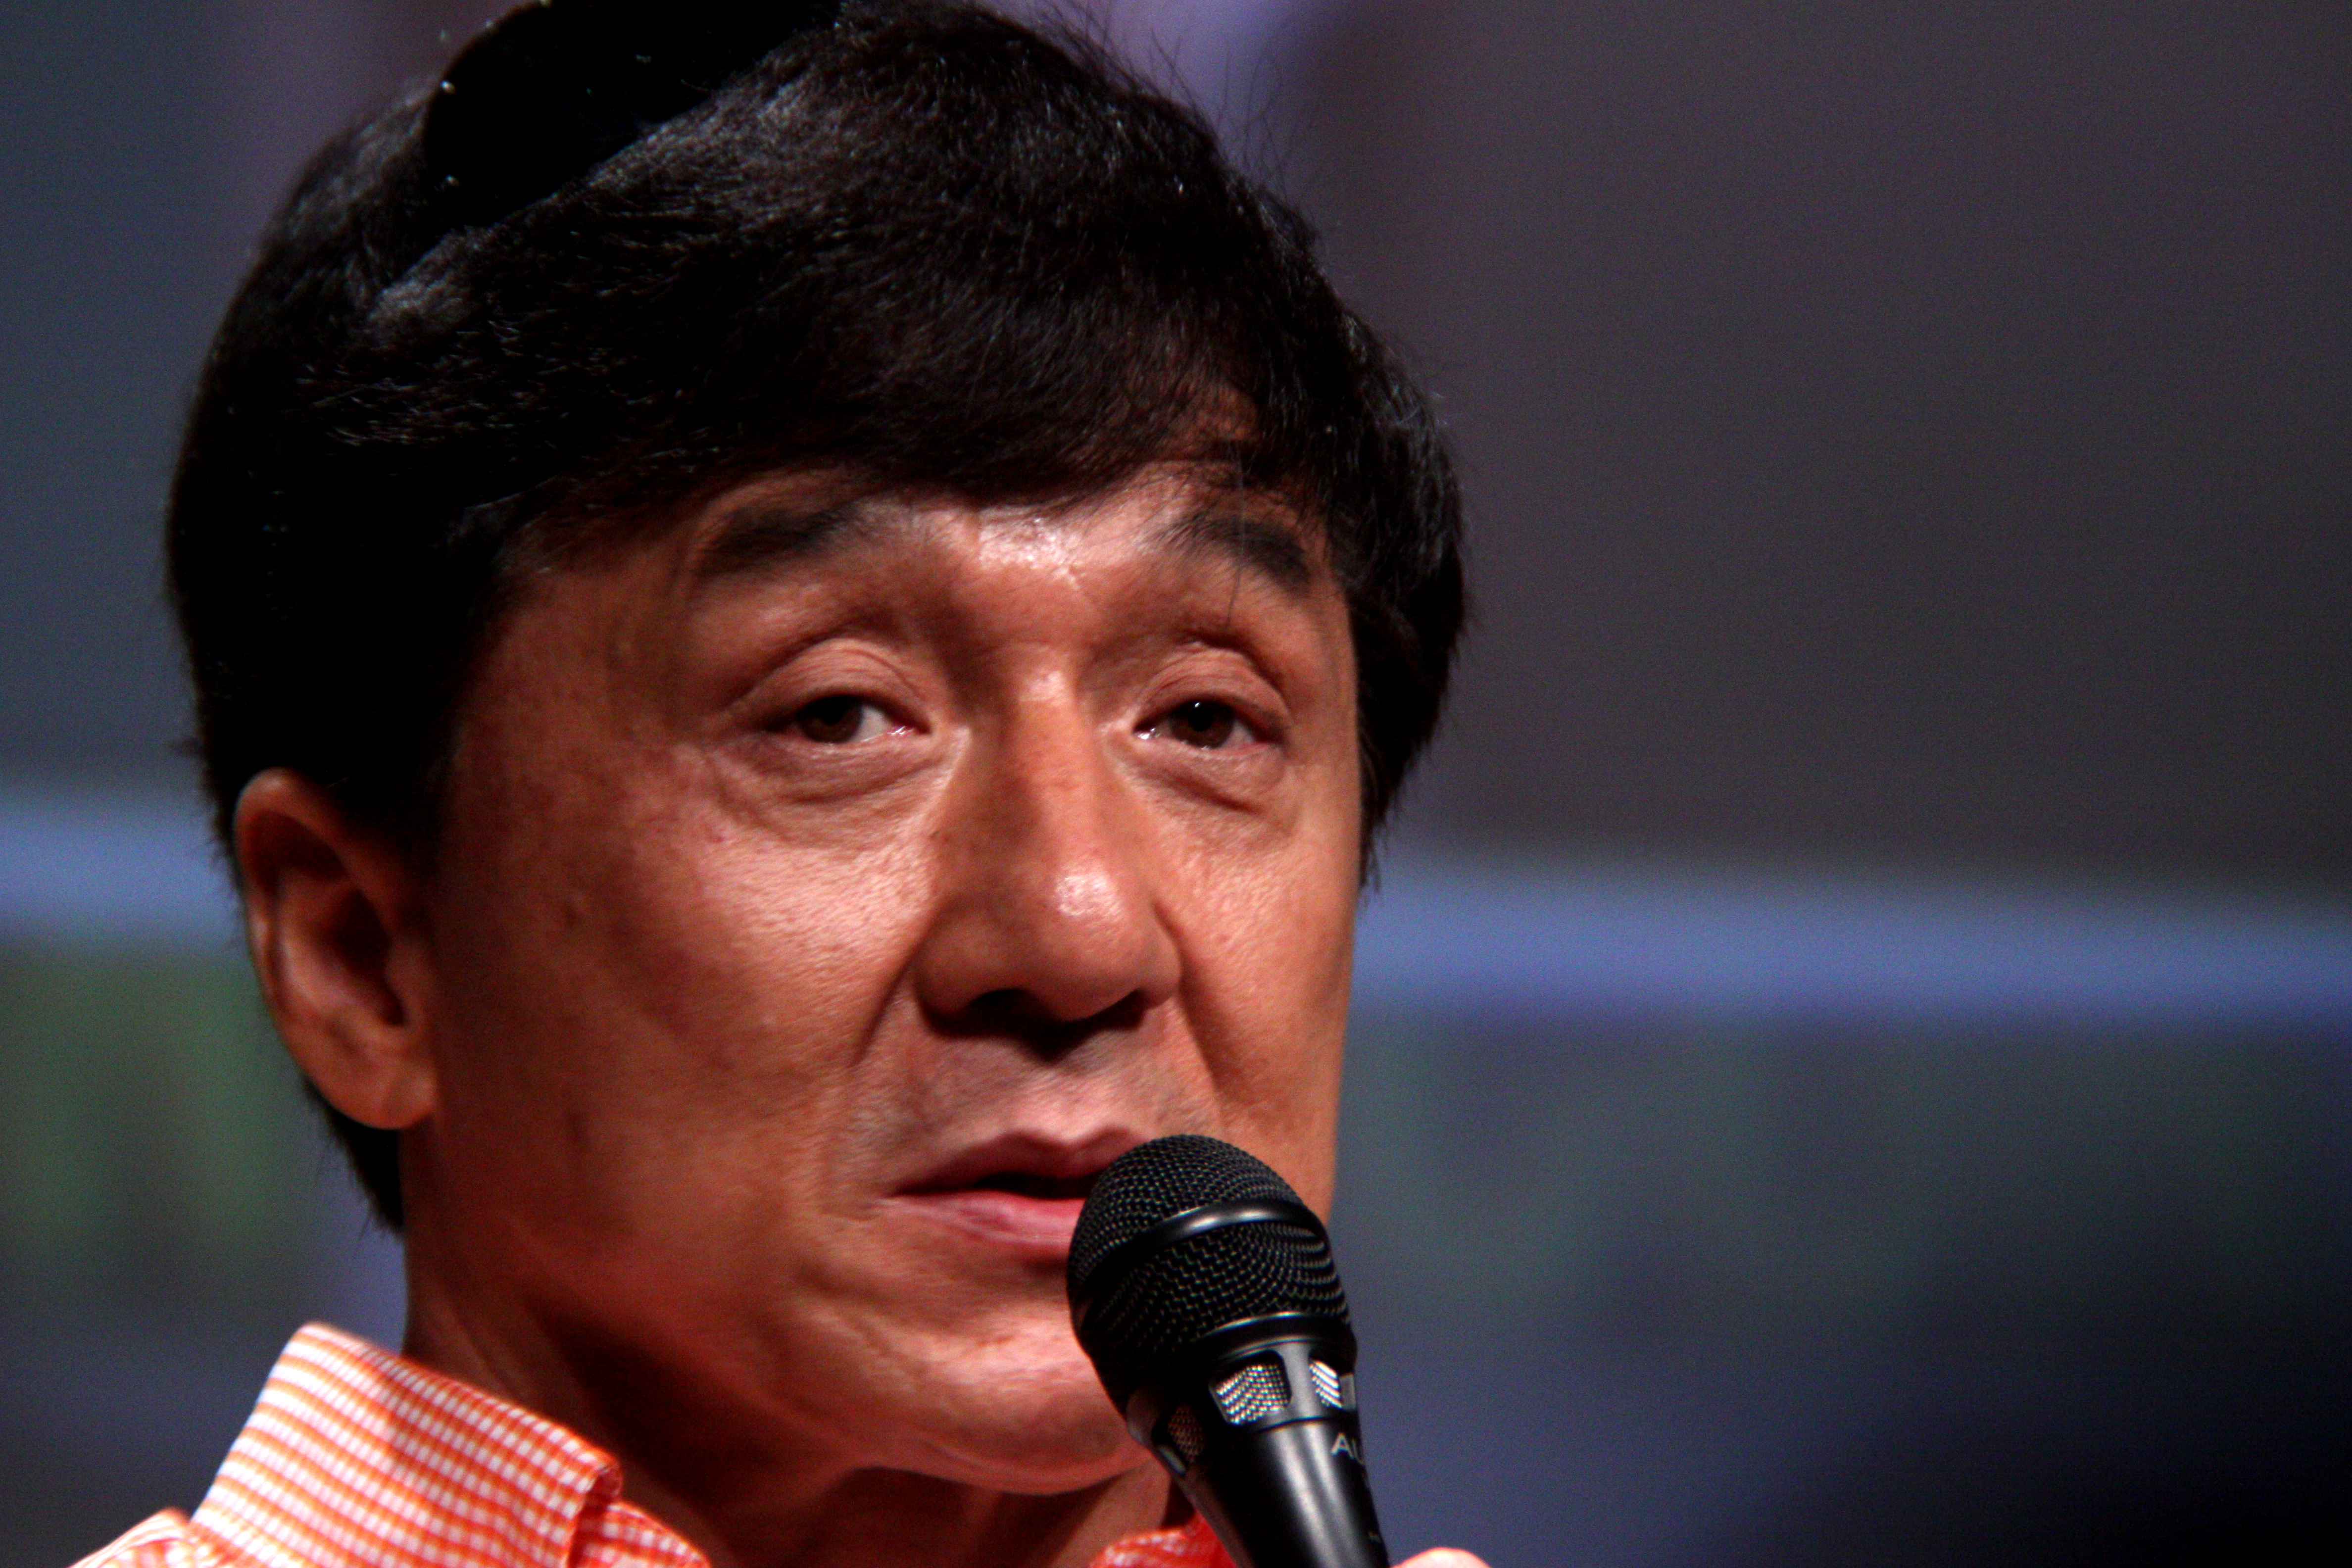 Személyesen kért bocsánatot kábítószer-használaton kapott fia miatt Jackie Chan